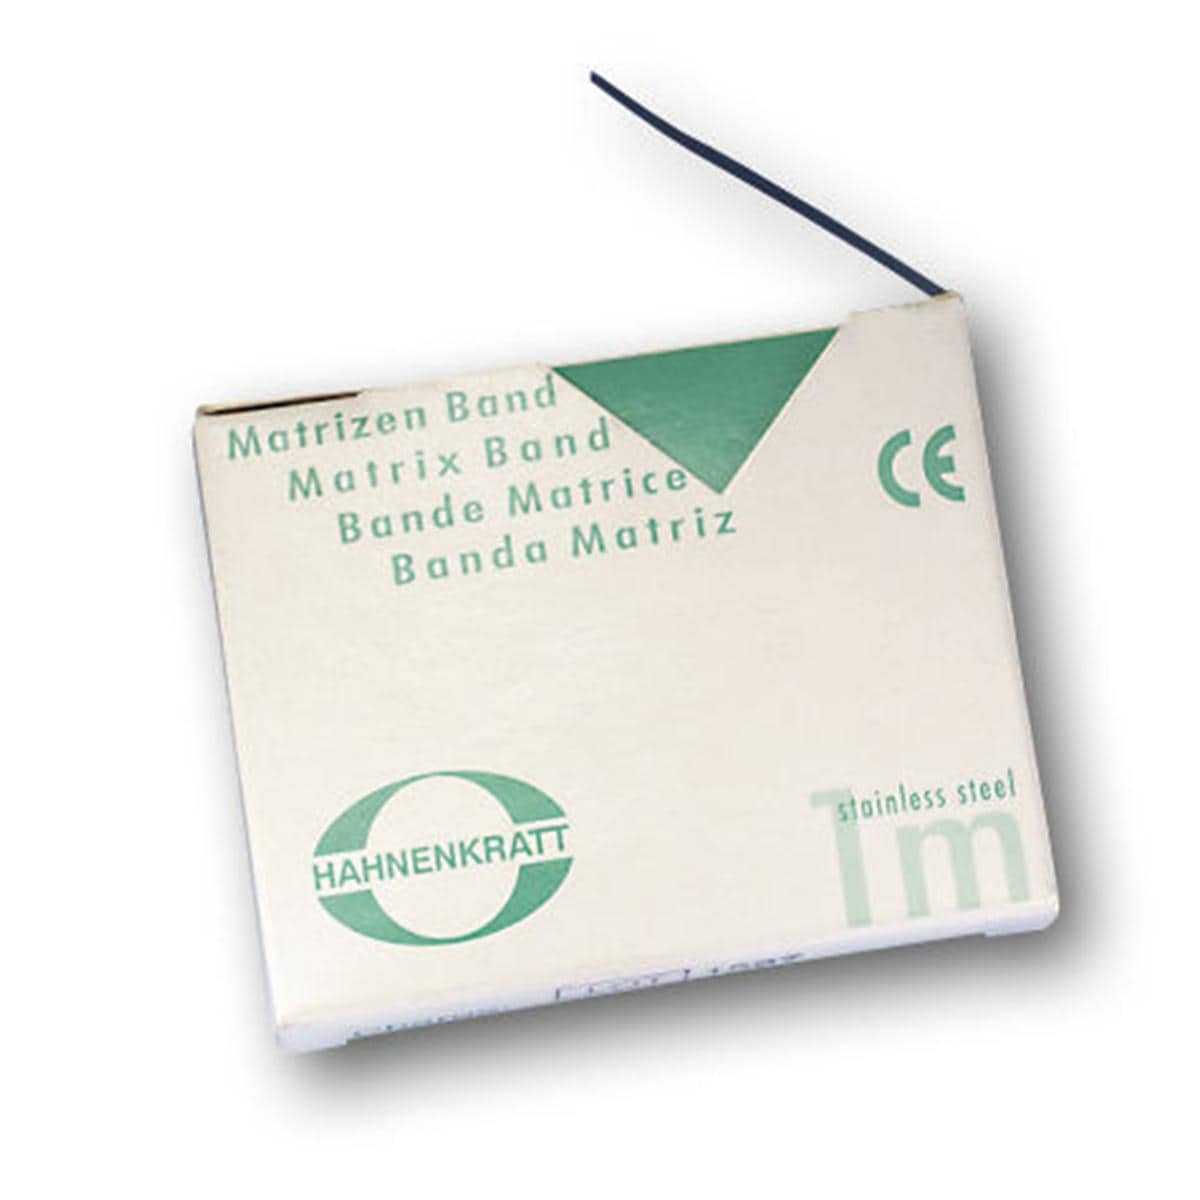 Matrizenband Hahnenkratt - Rolle 3 m - Breite 5 mm, Stärke 0,05 mm